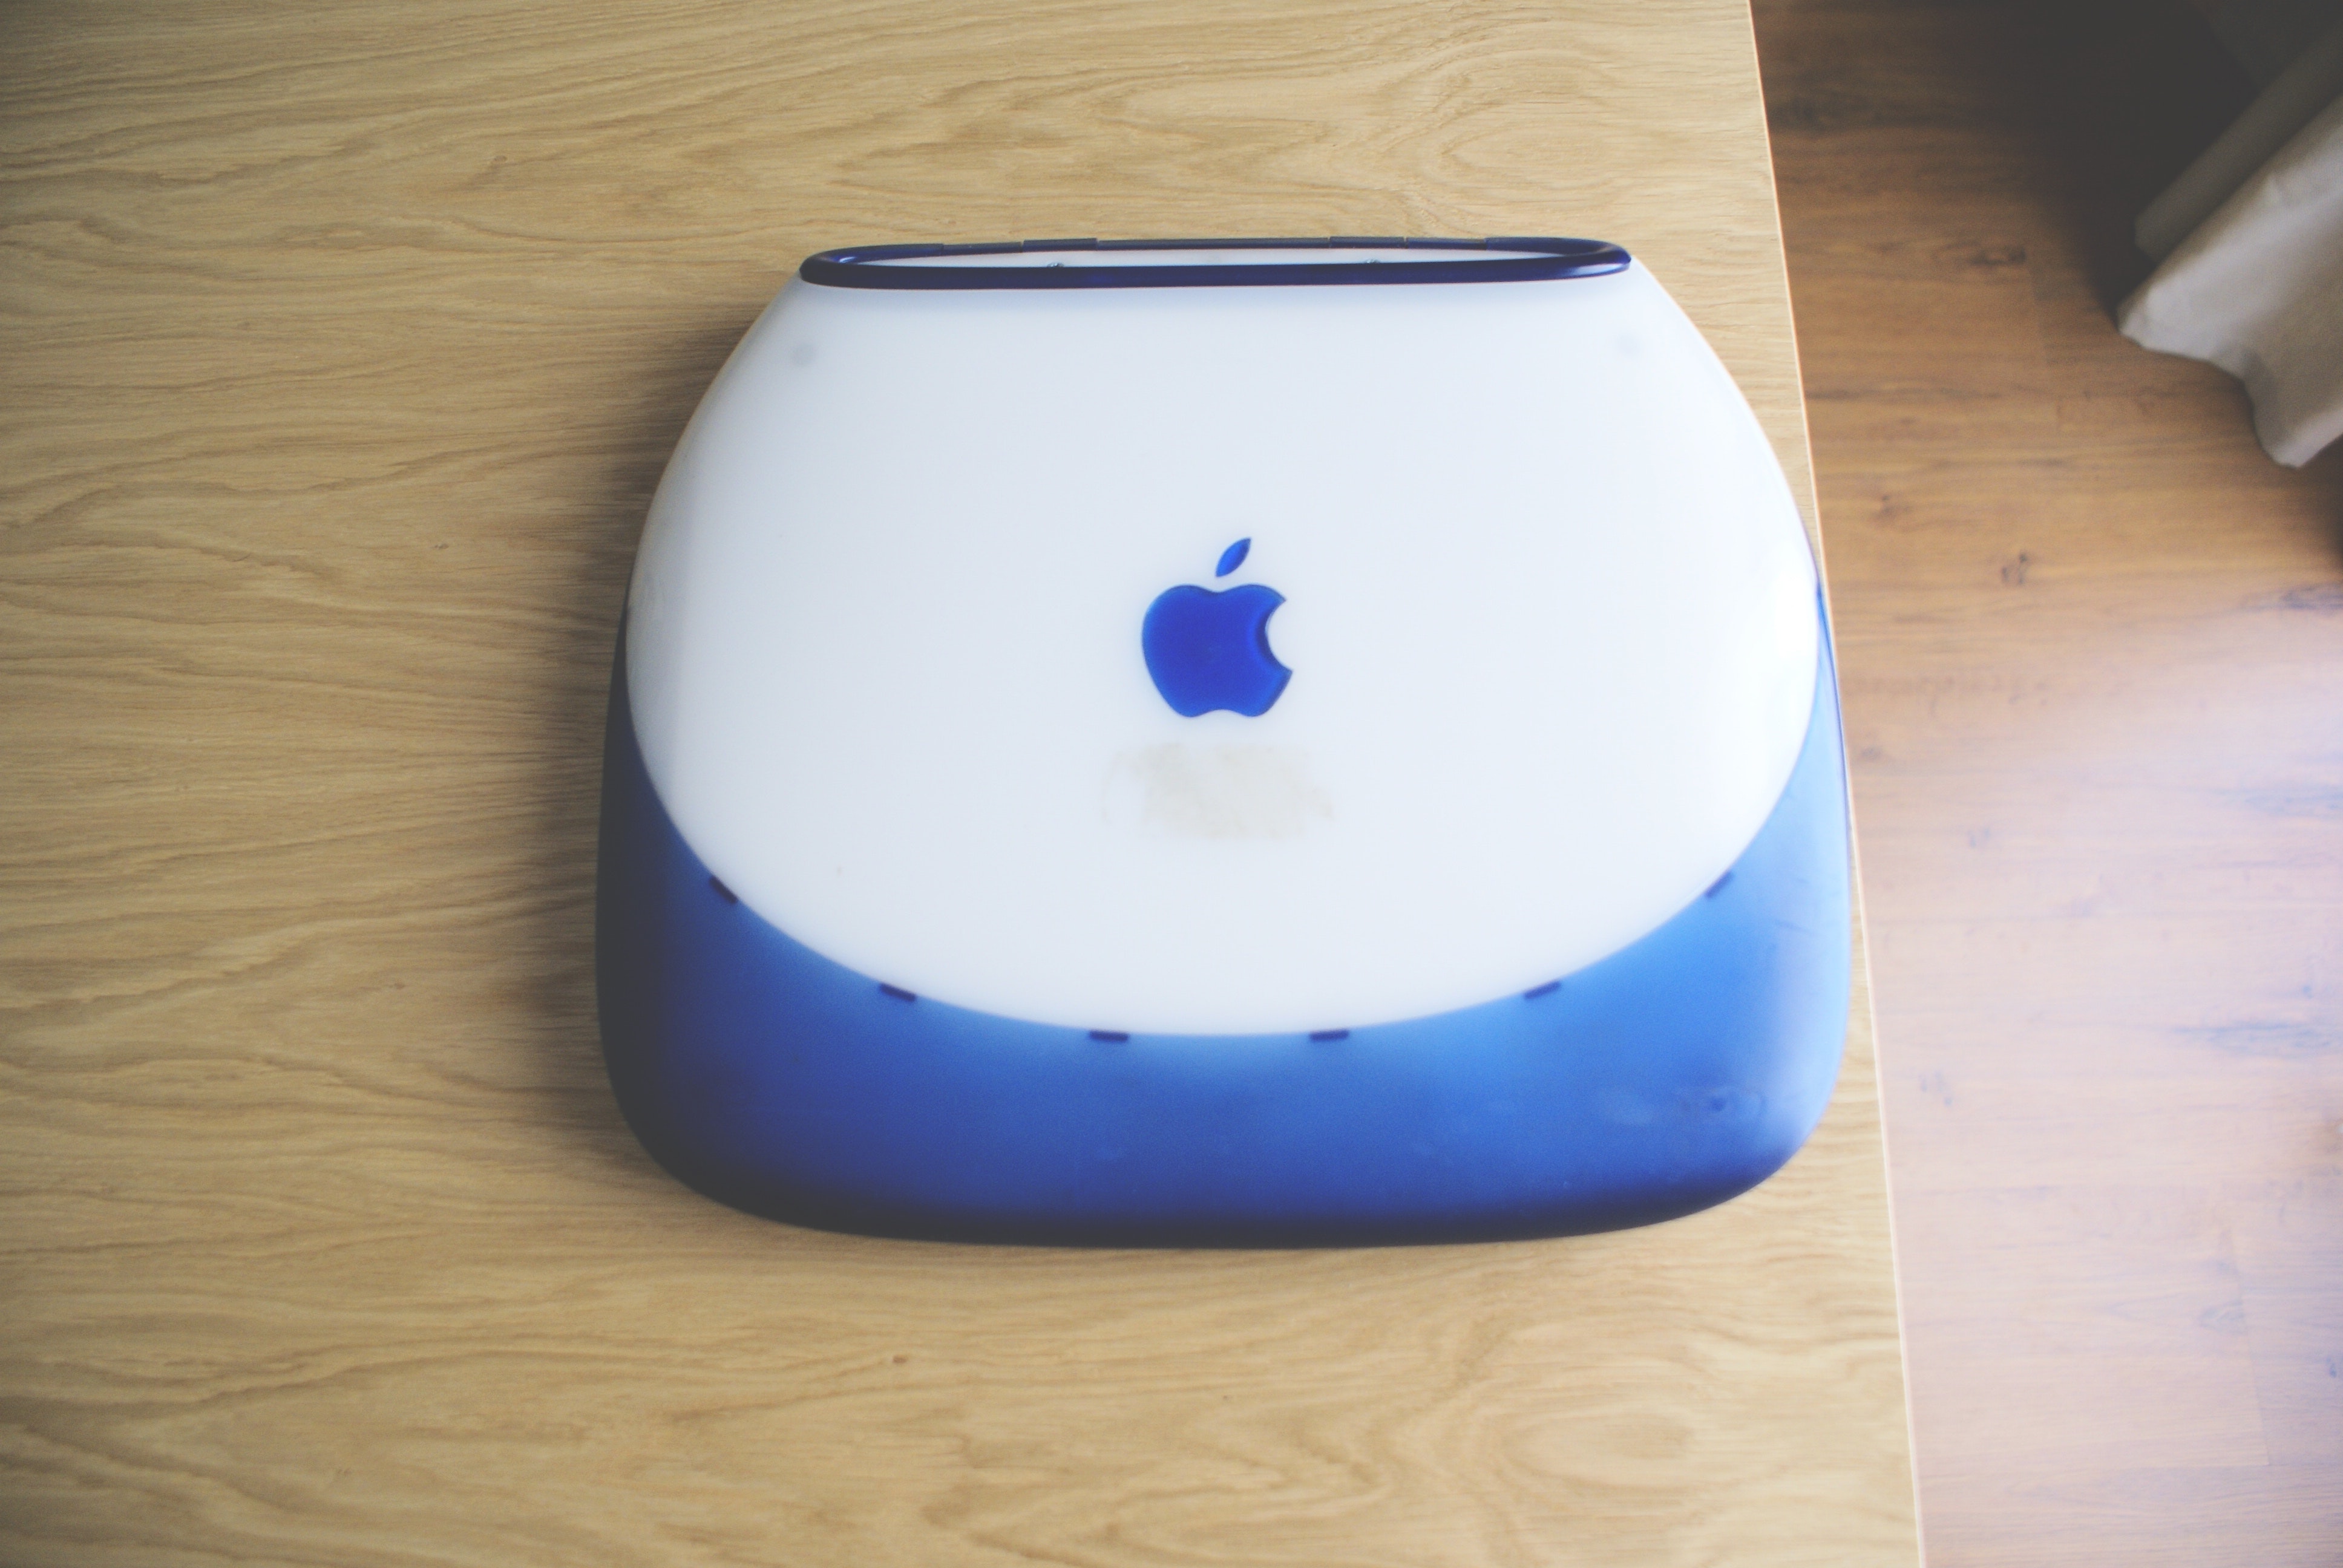 Prvi iBook doimao se kao prvi Appleov moderni prijenosni kompjuter. Također, to je prvo Appleovo računalo opremljeno bežičnom mrežom, odnosno Wi-Fi-jem, zbog čega je iBook prvi Appleov punokrvni laptop.